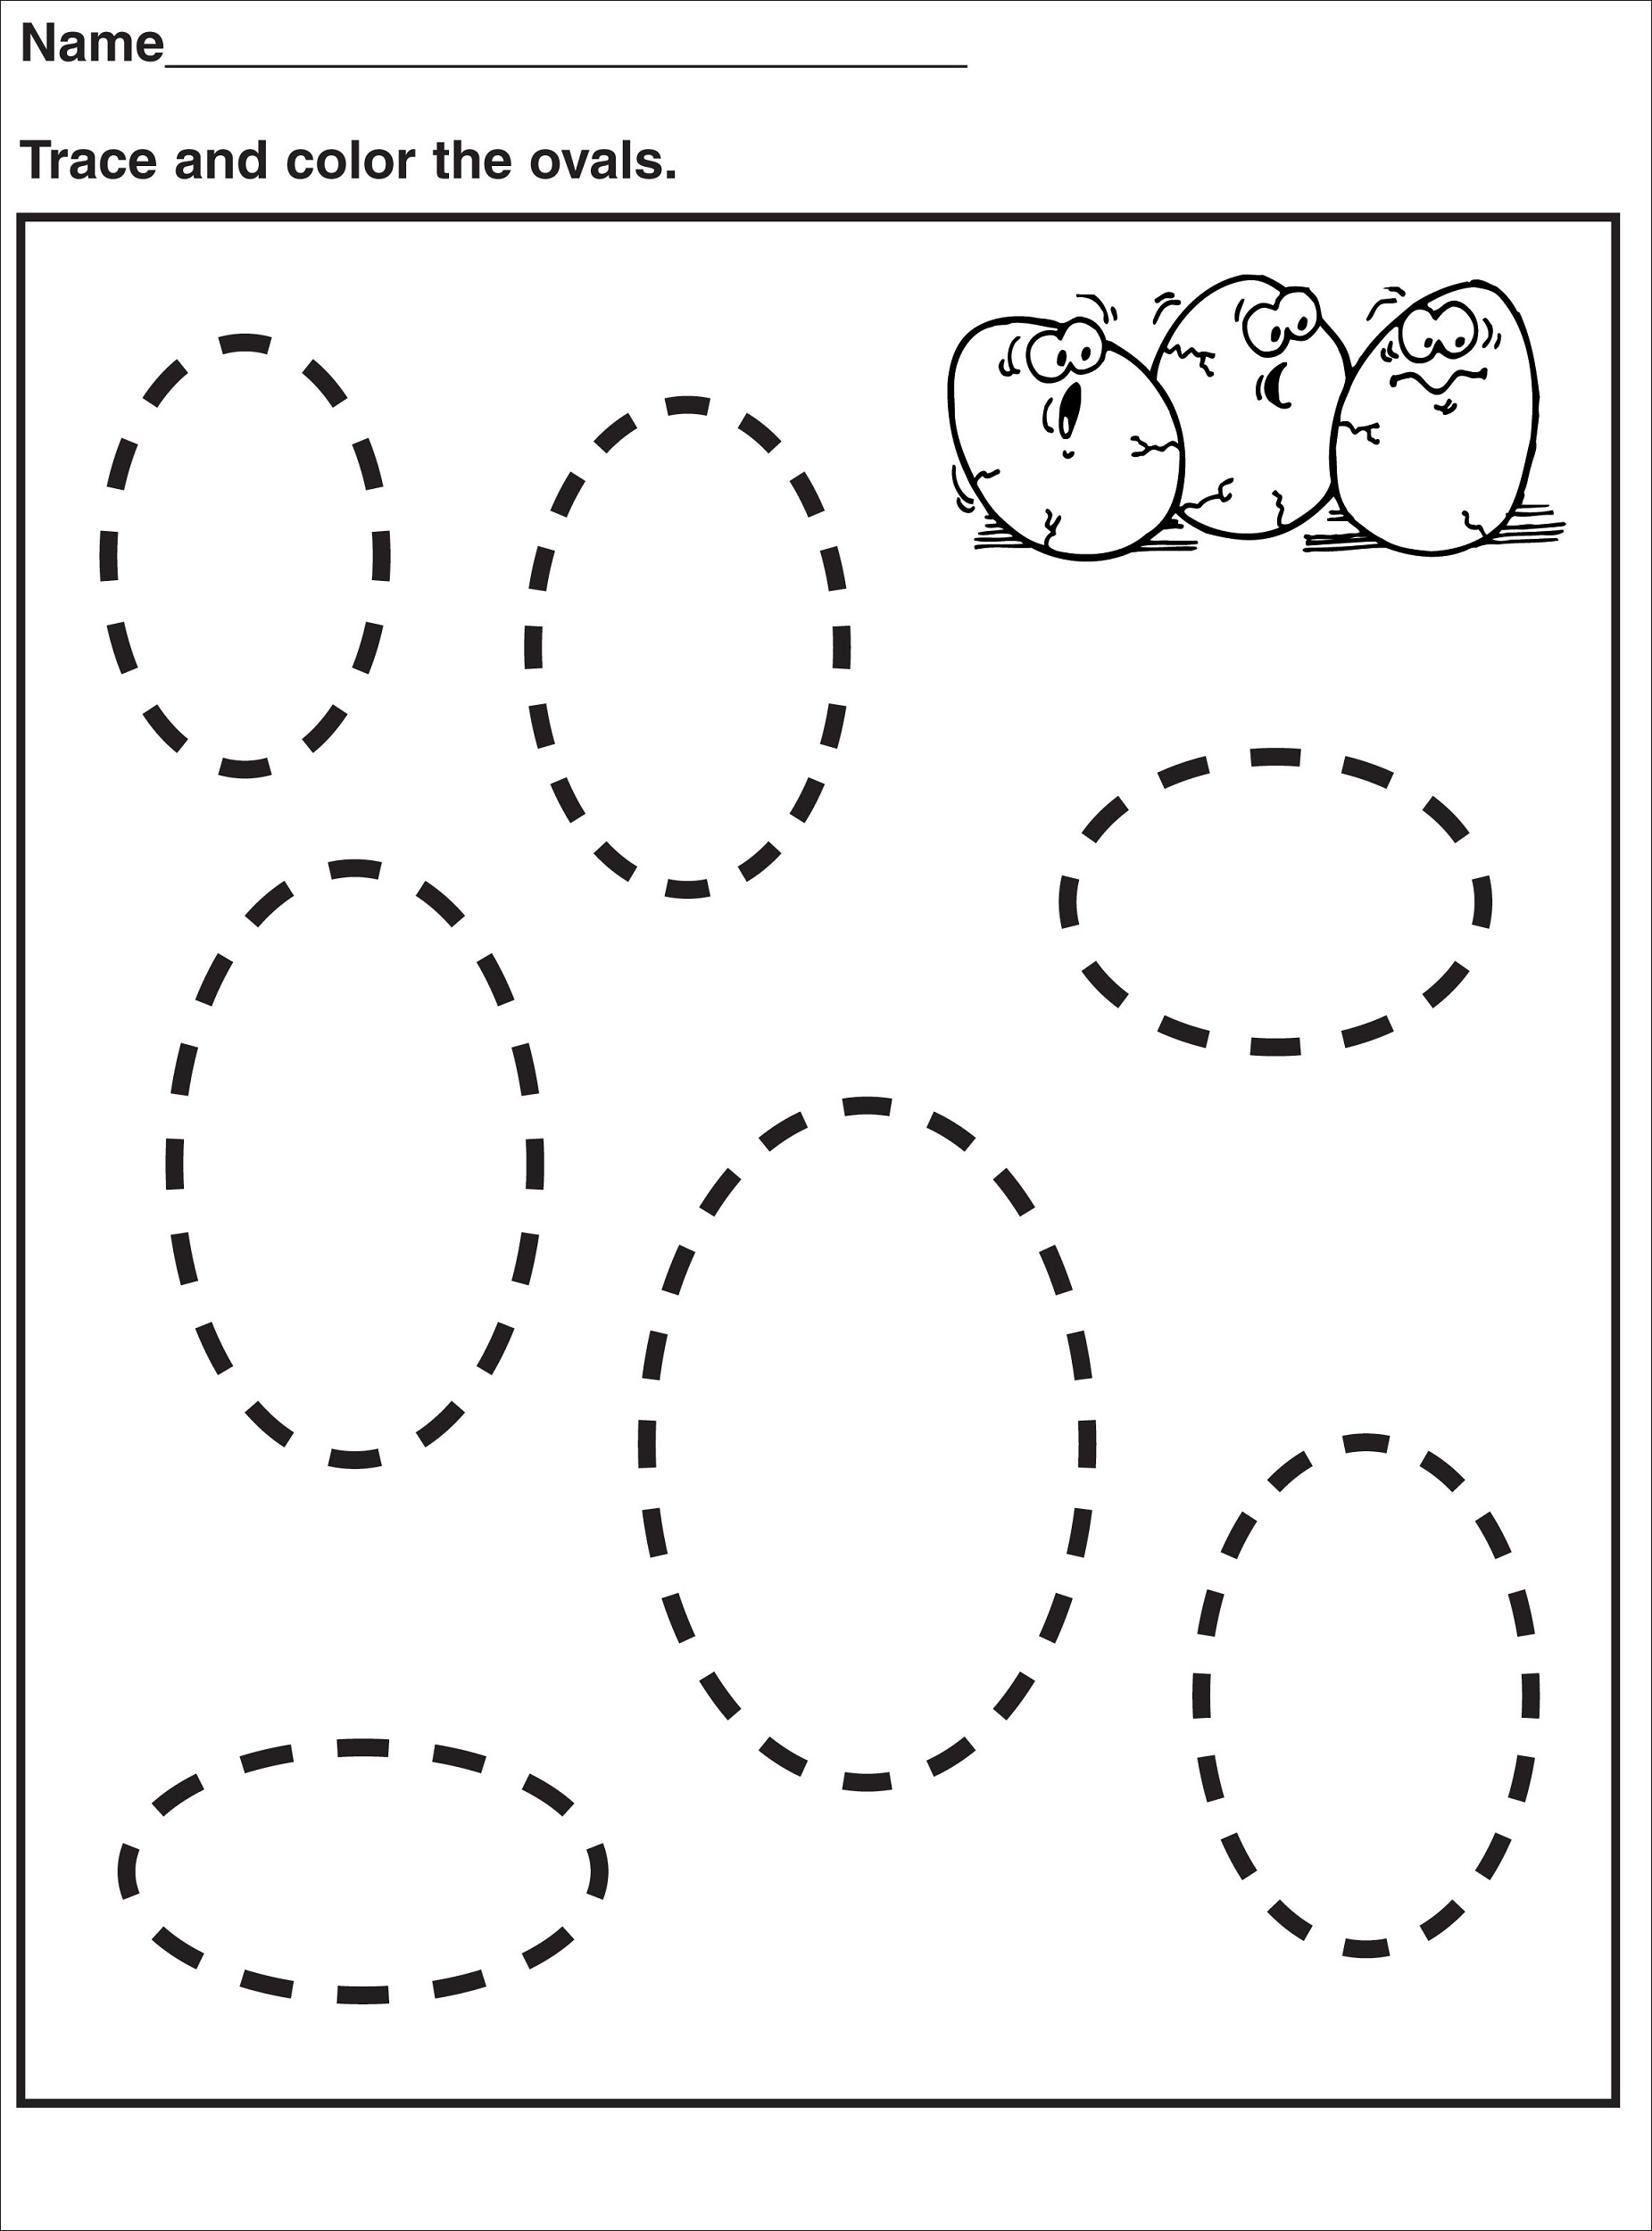 shapes-worksheets-for-kids-oval